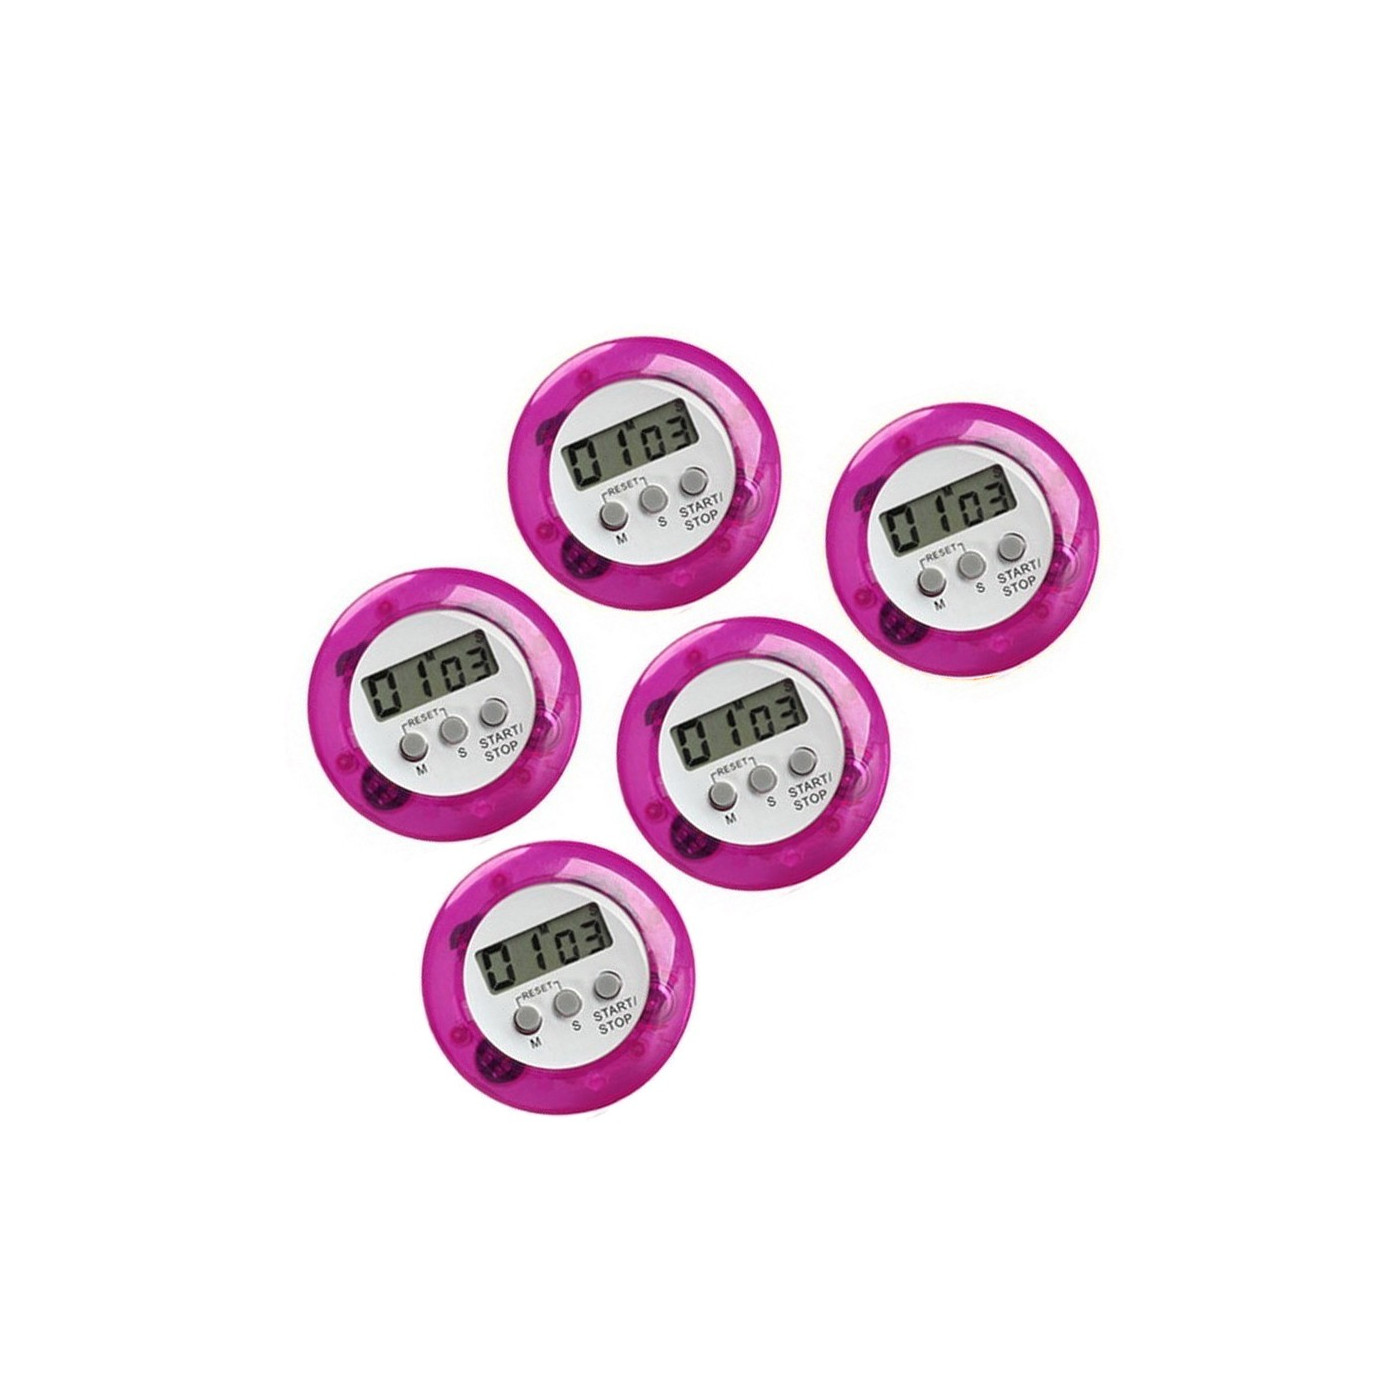 Set of 5 digital kitchen timers, alarm clocks, purple